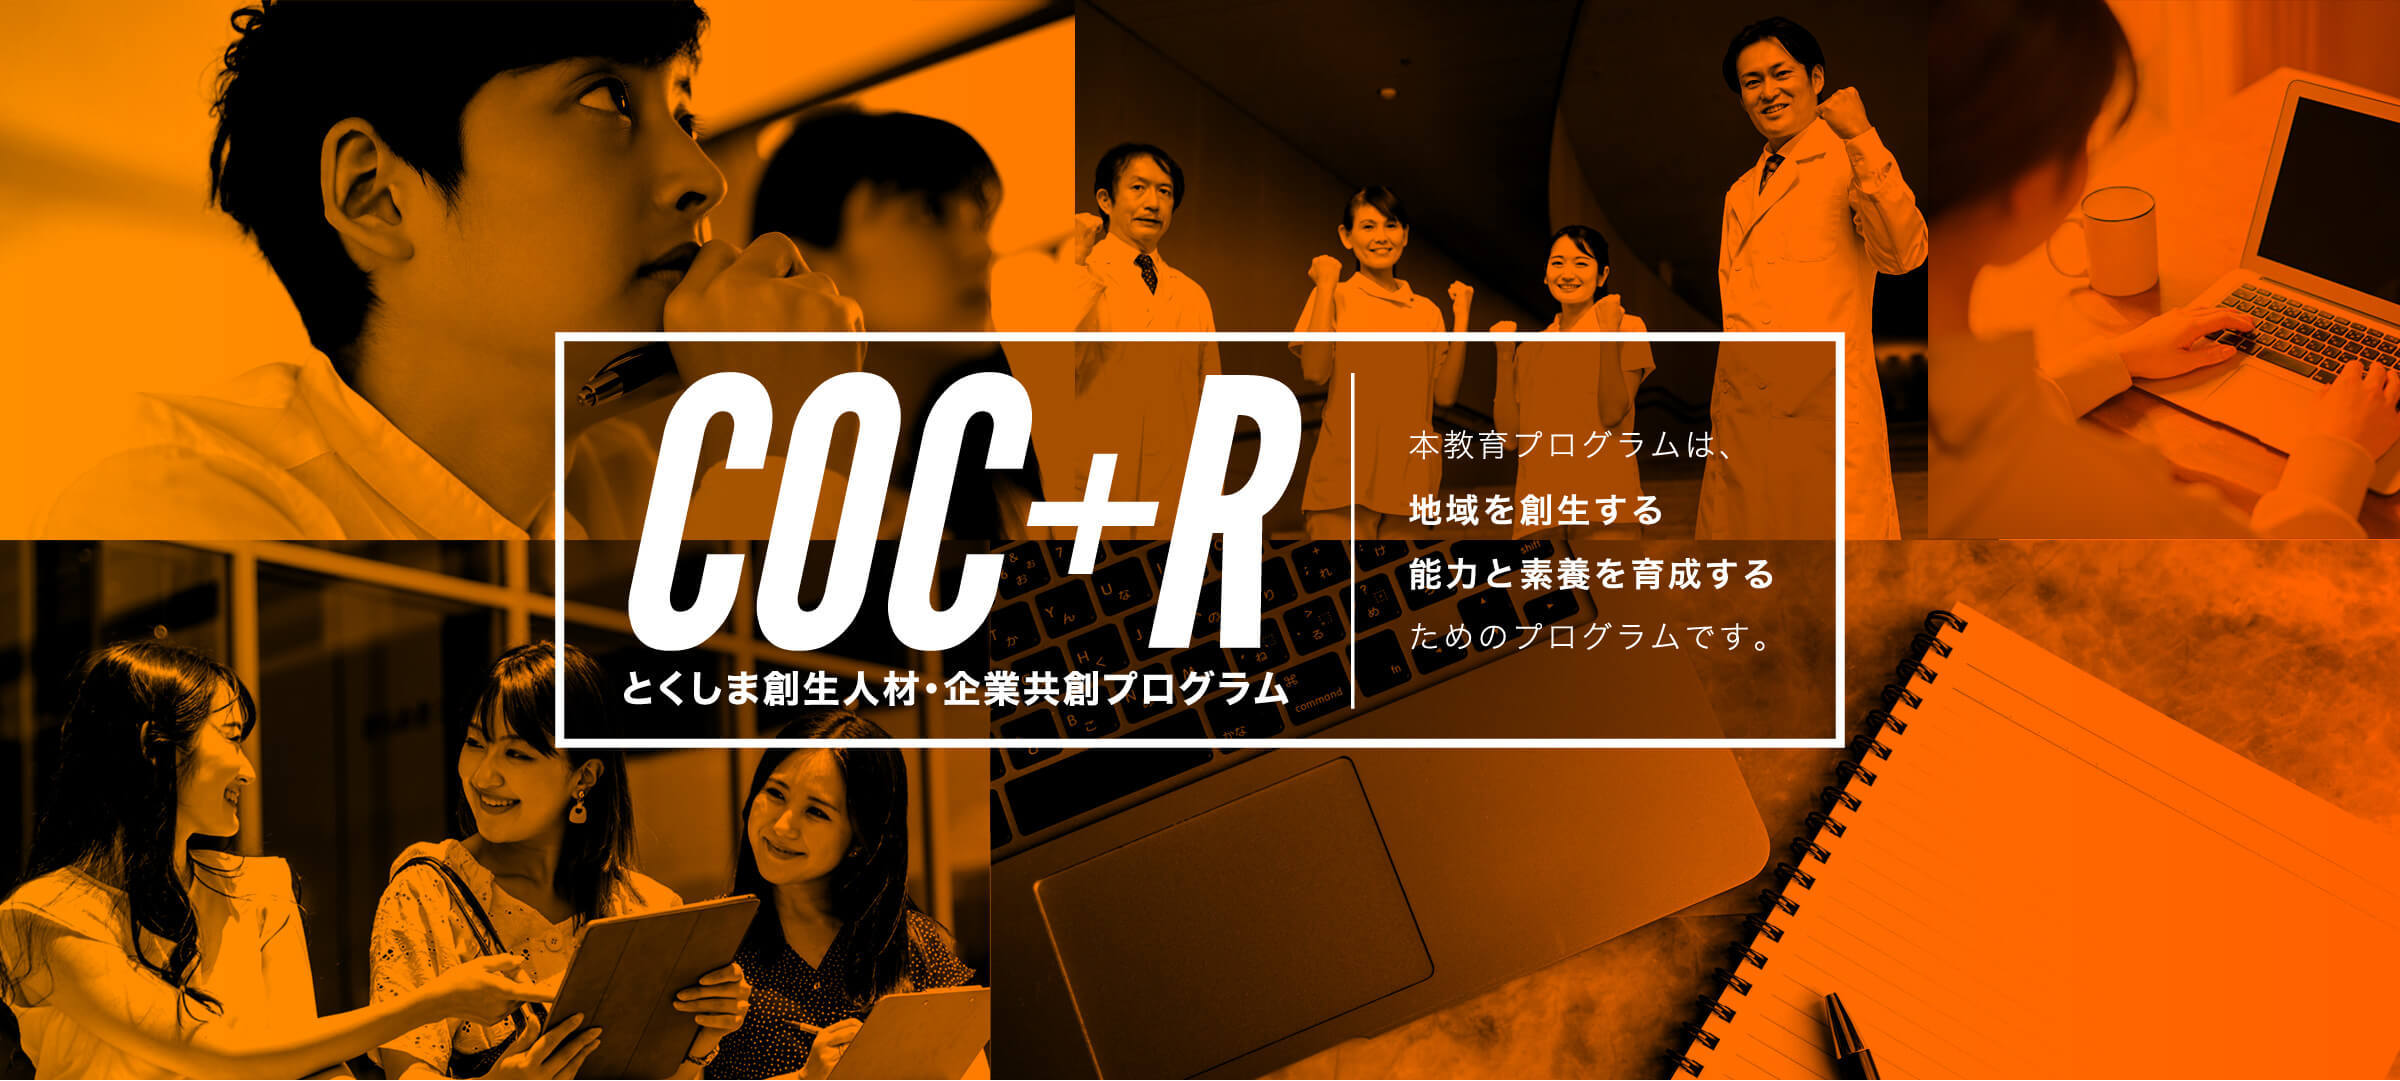 COC+Rメインスライド